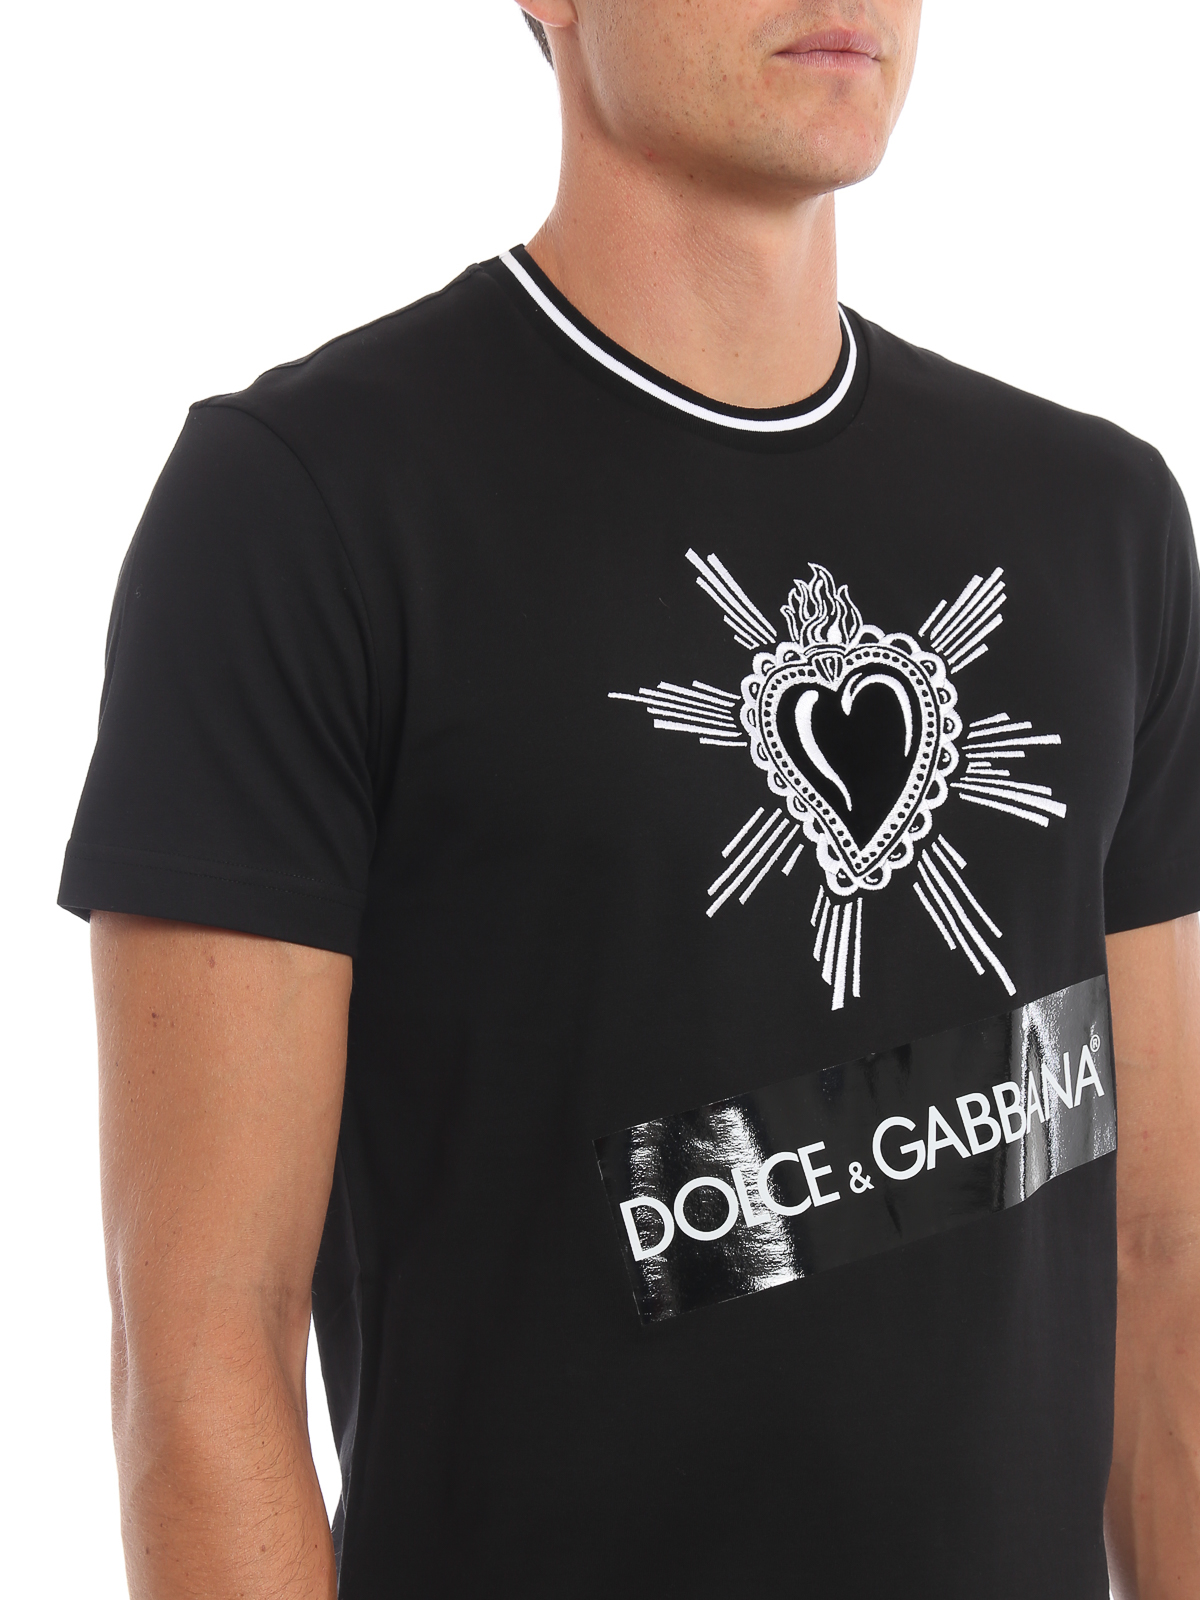 dolce and gabbana heart t shirt